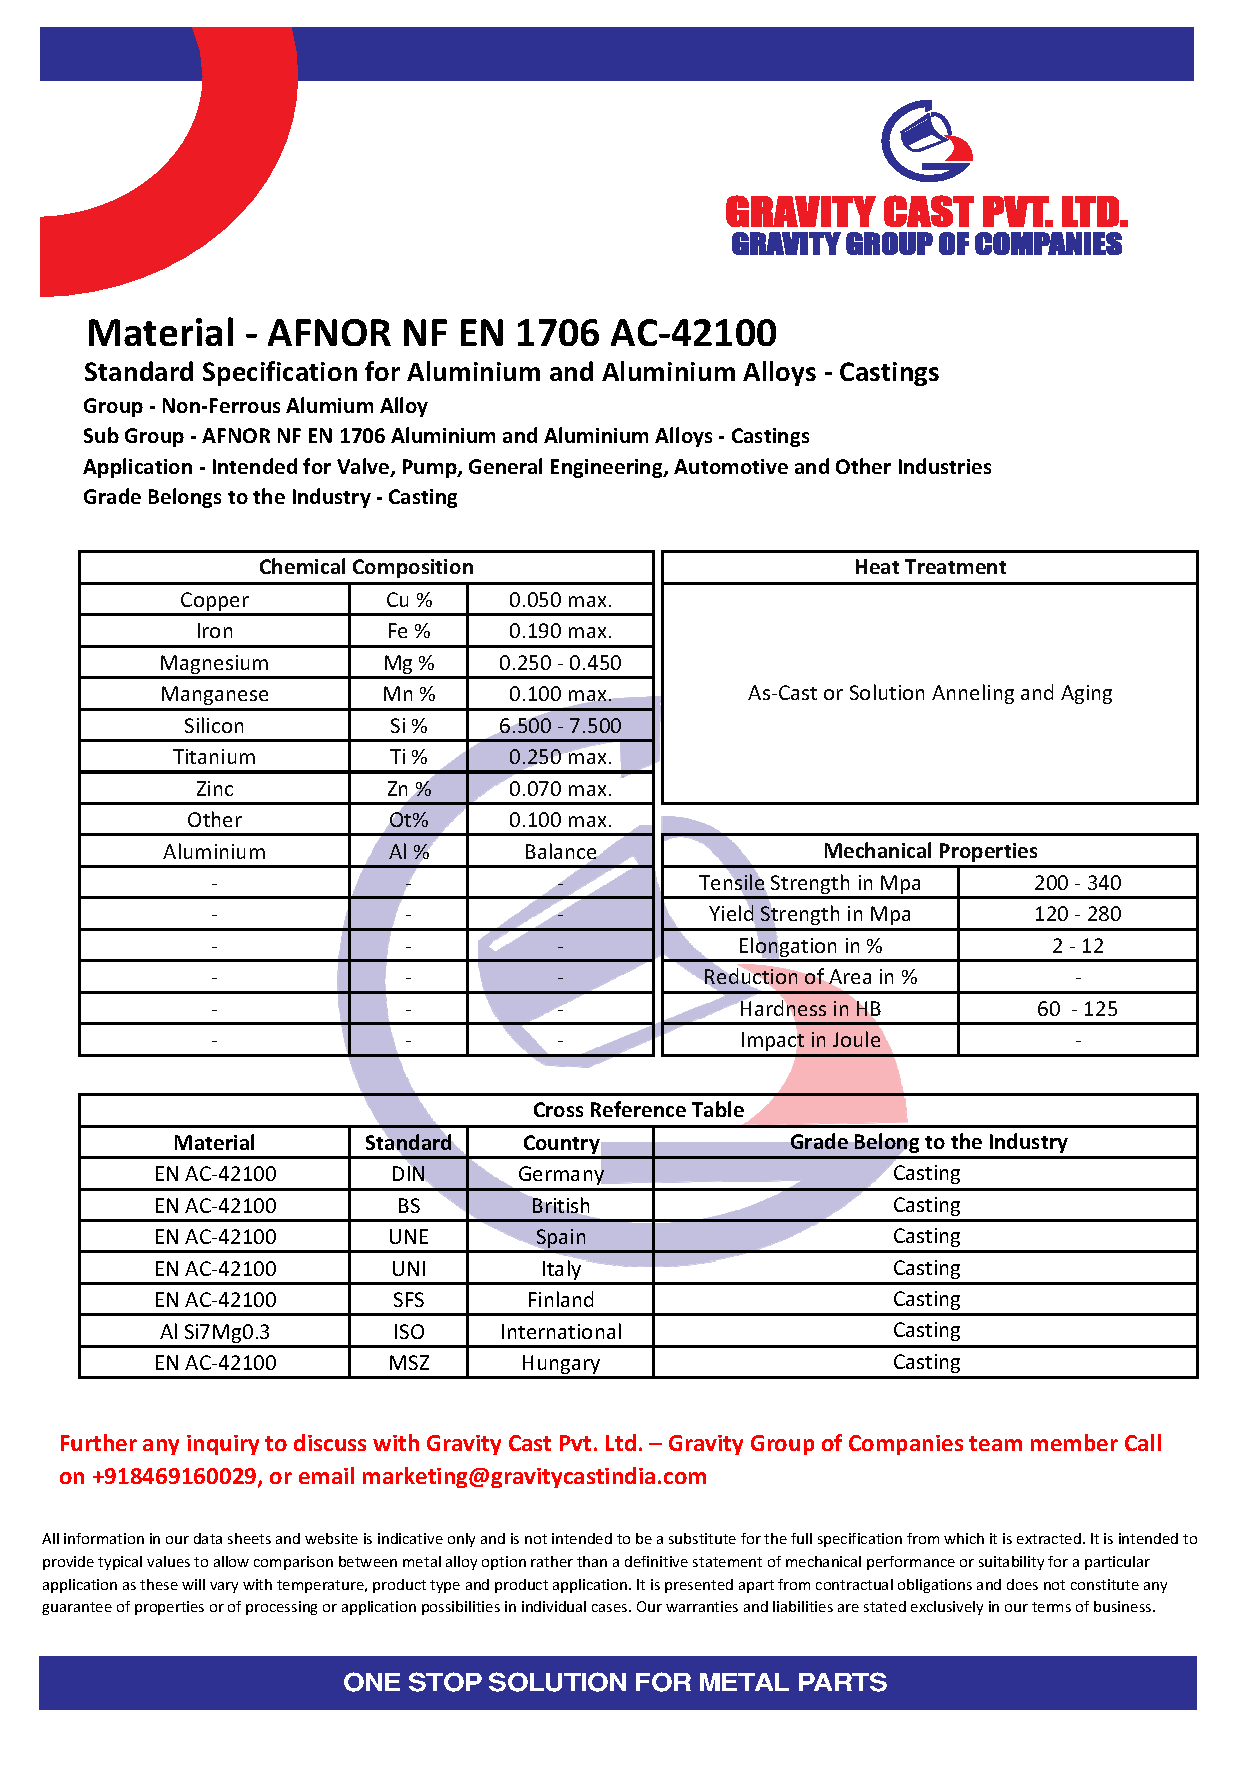 AFNOR NF EN 1706 AC-42100.pdf